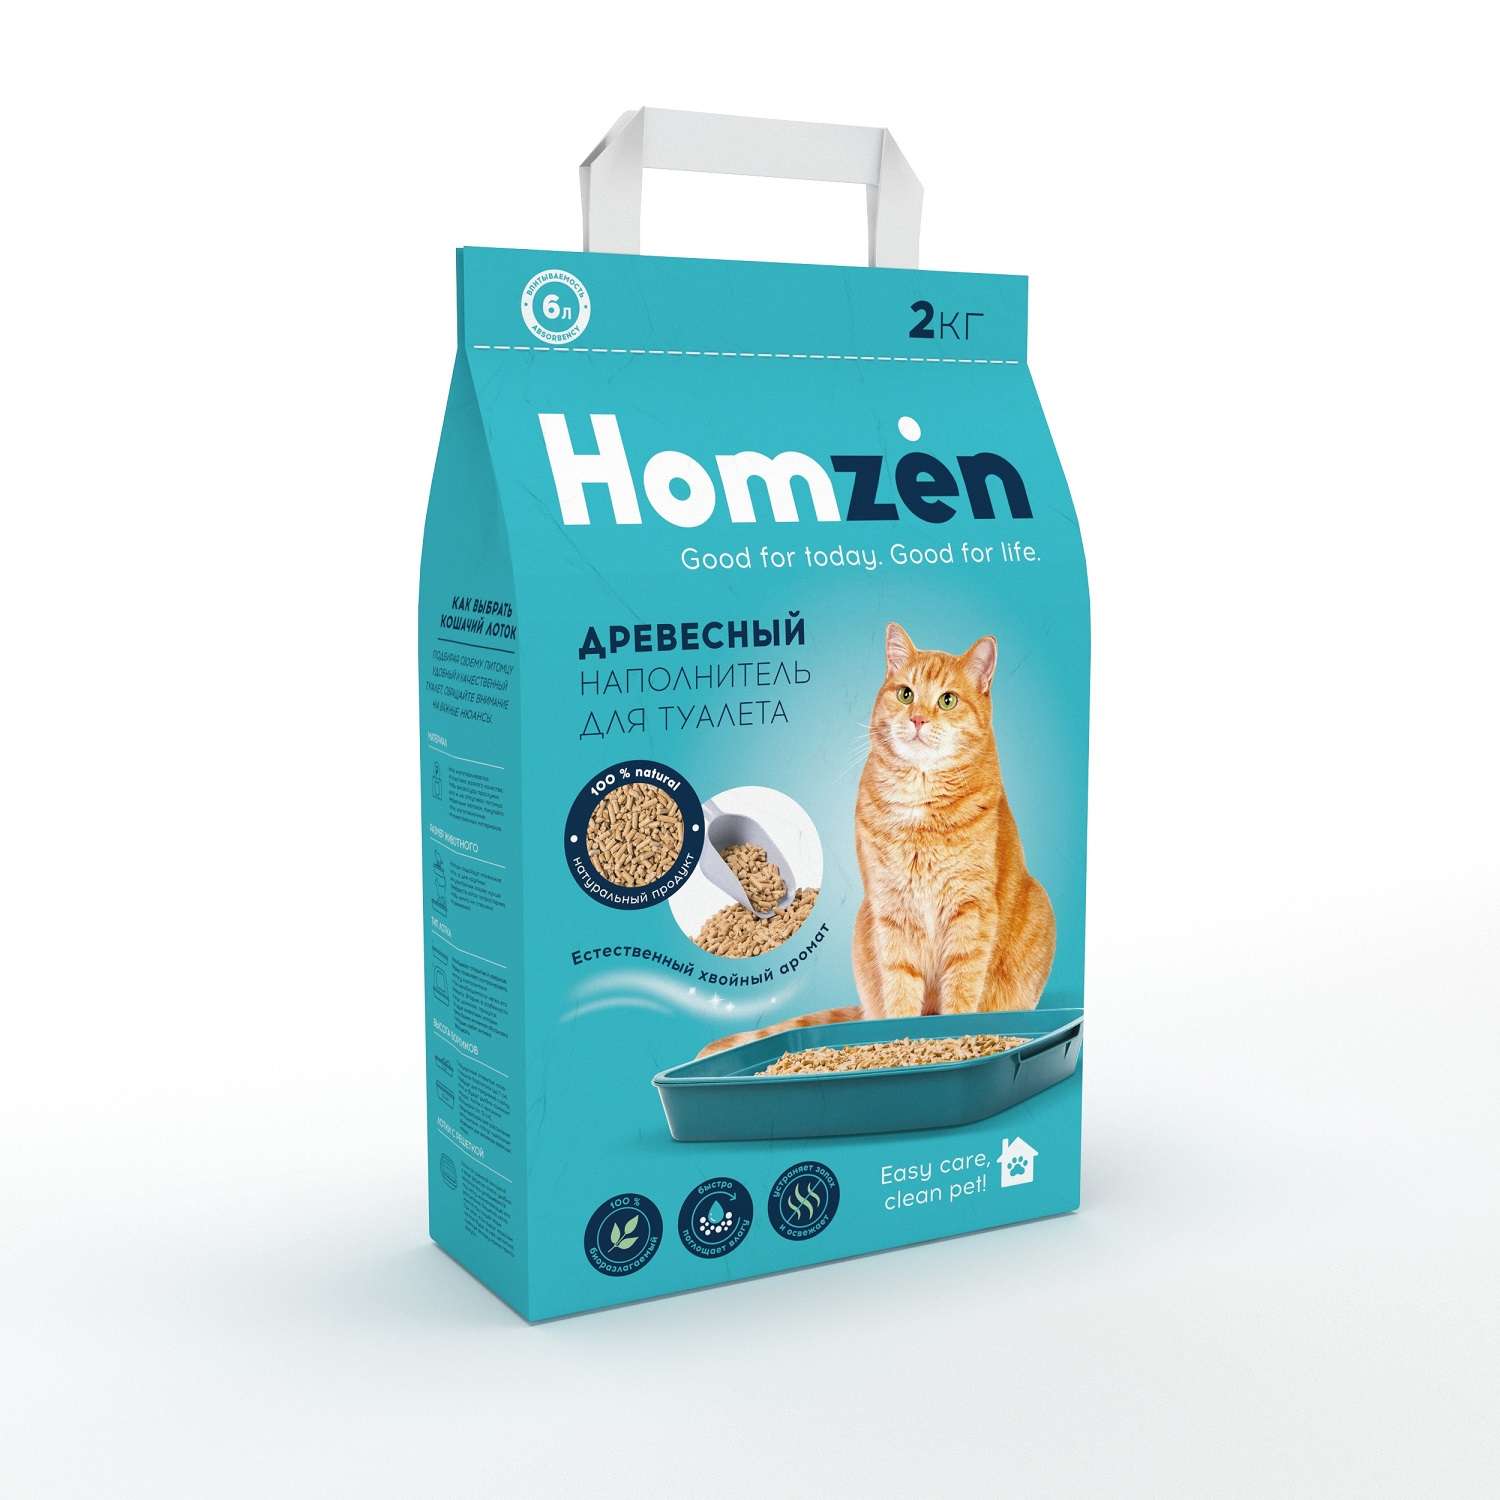 Наполнитель для кошачьего туалета Homzen древесный 6л - фото 2